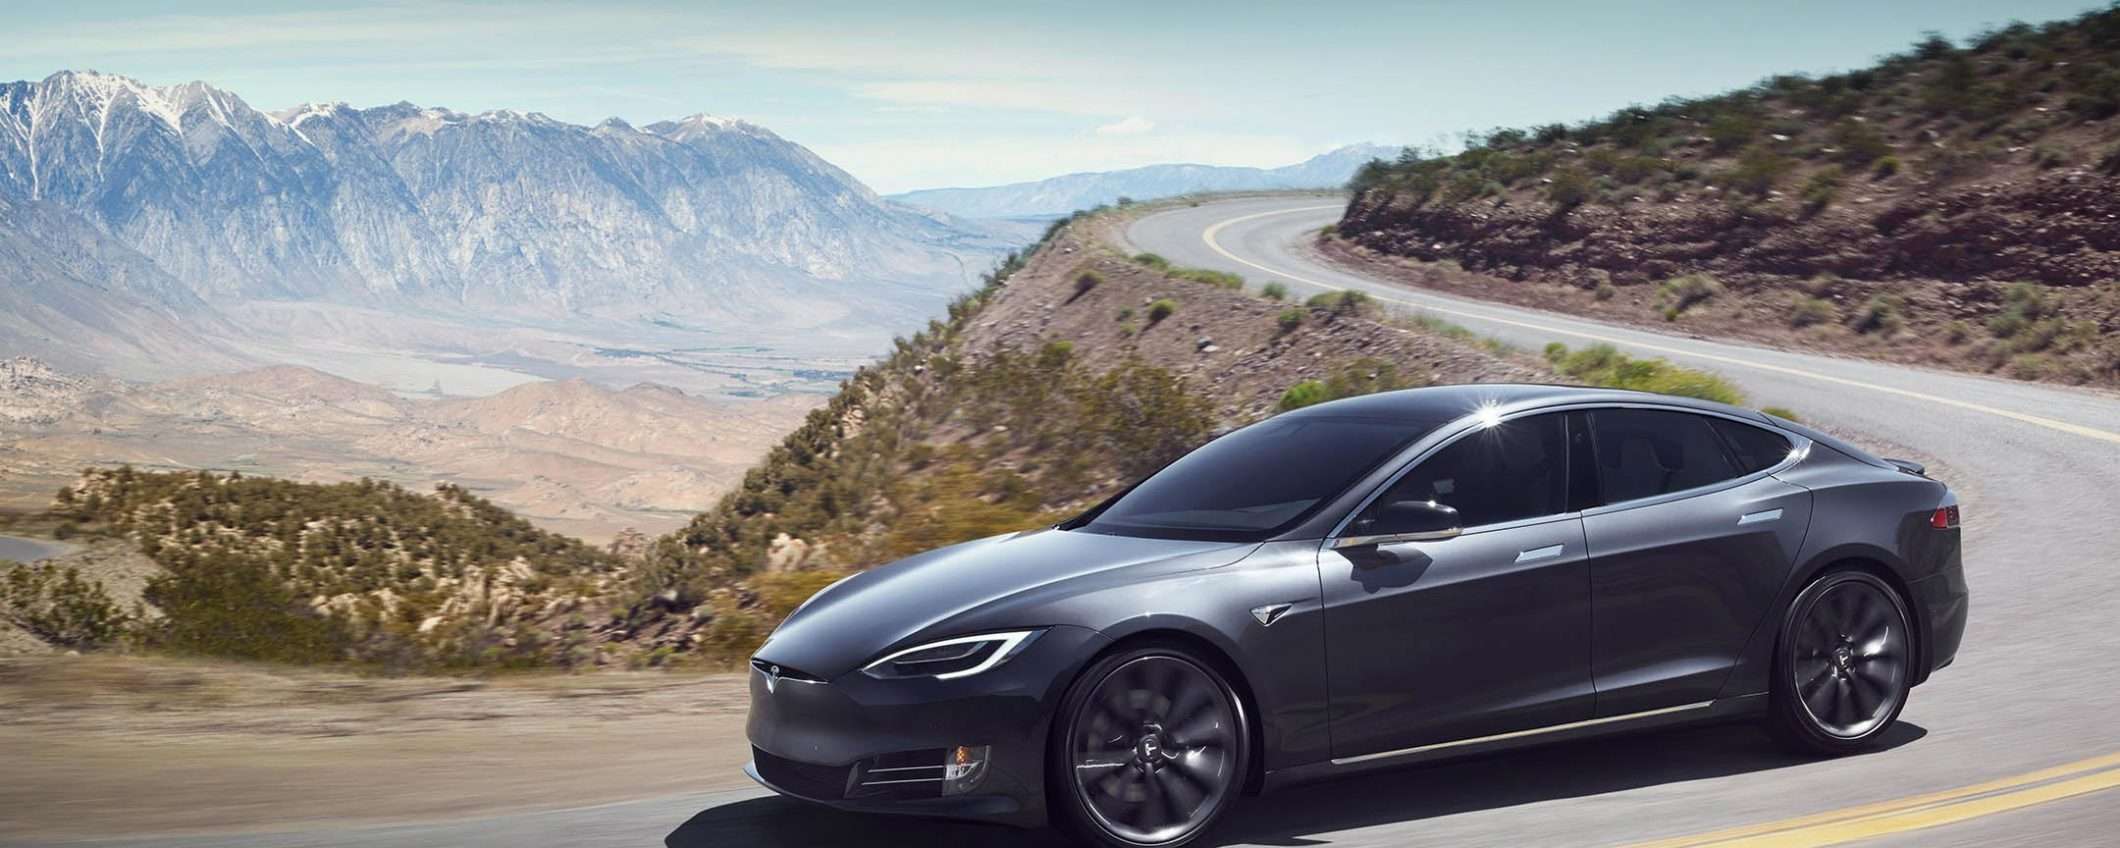 Smartphone e tablet per rubare una Tesla Model S